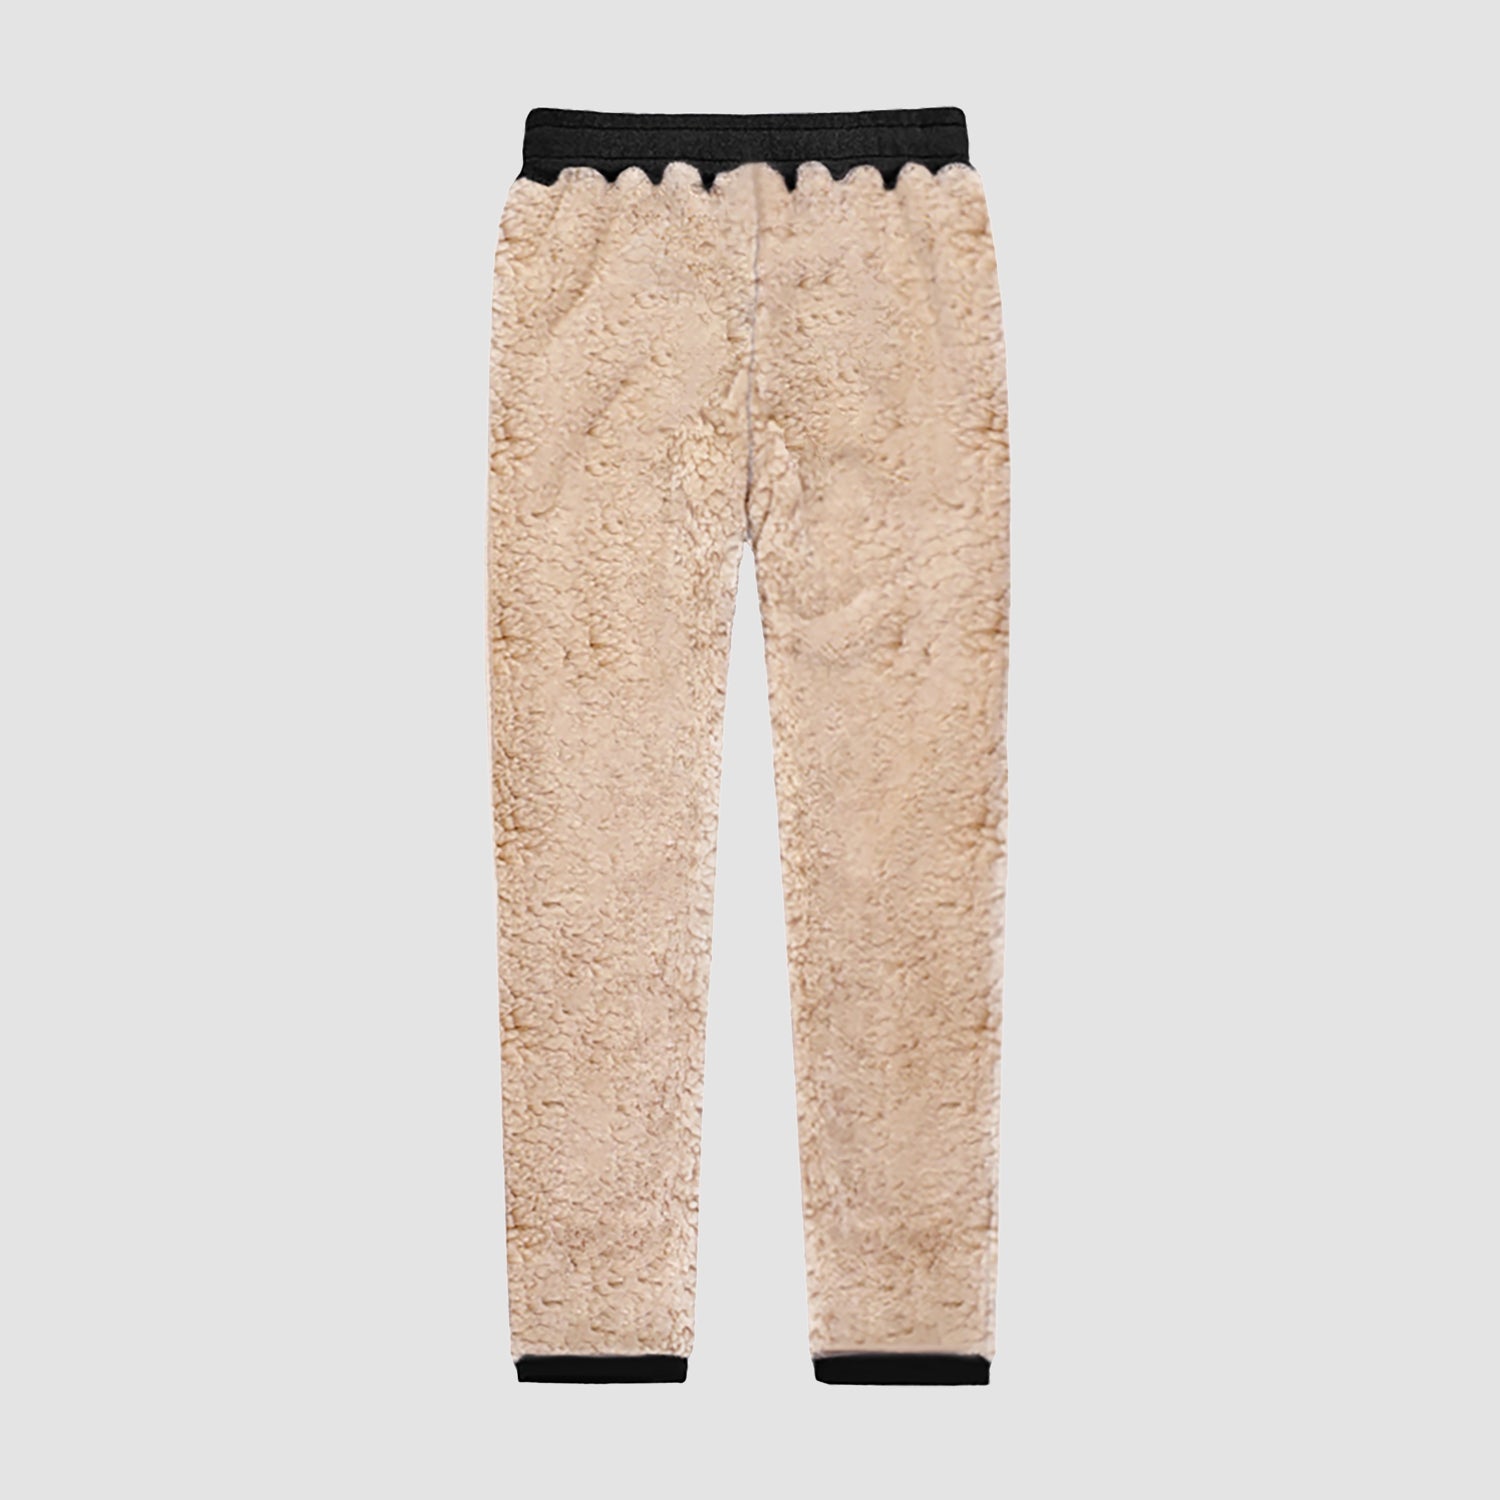 Men's Winter Fleece Pants Sweatpants Thicken Warm Athletic Pants